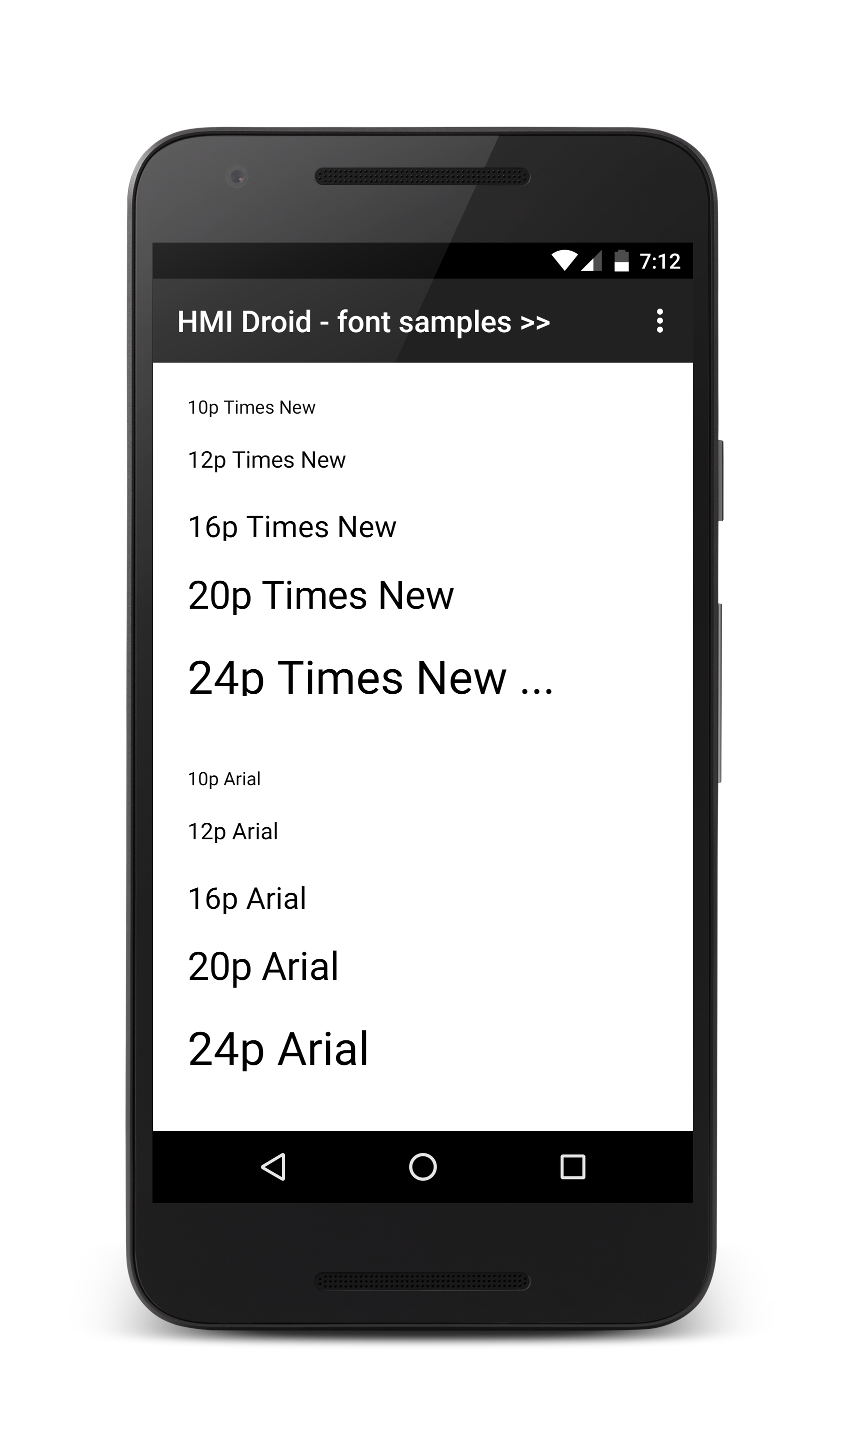 HMI Droid font samples